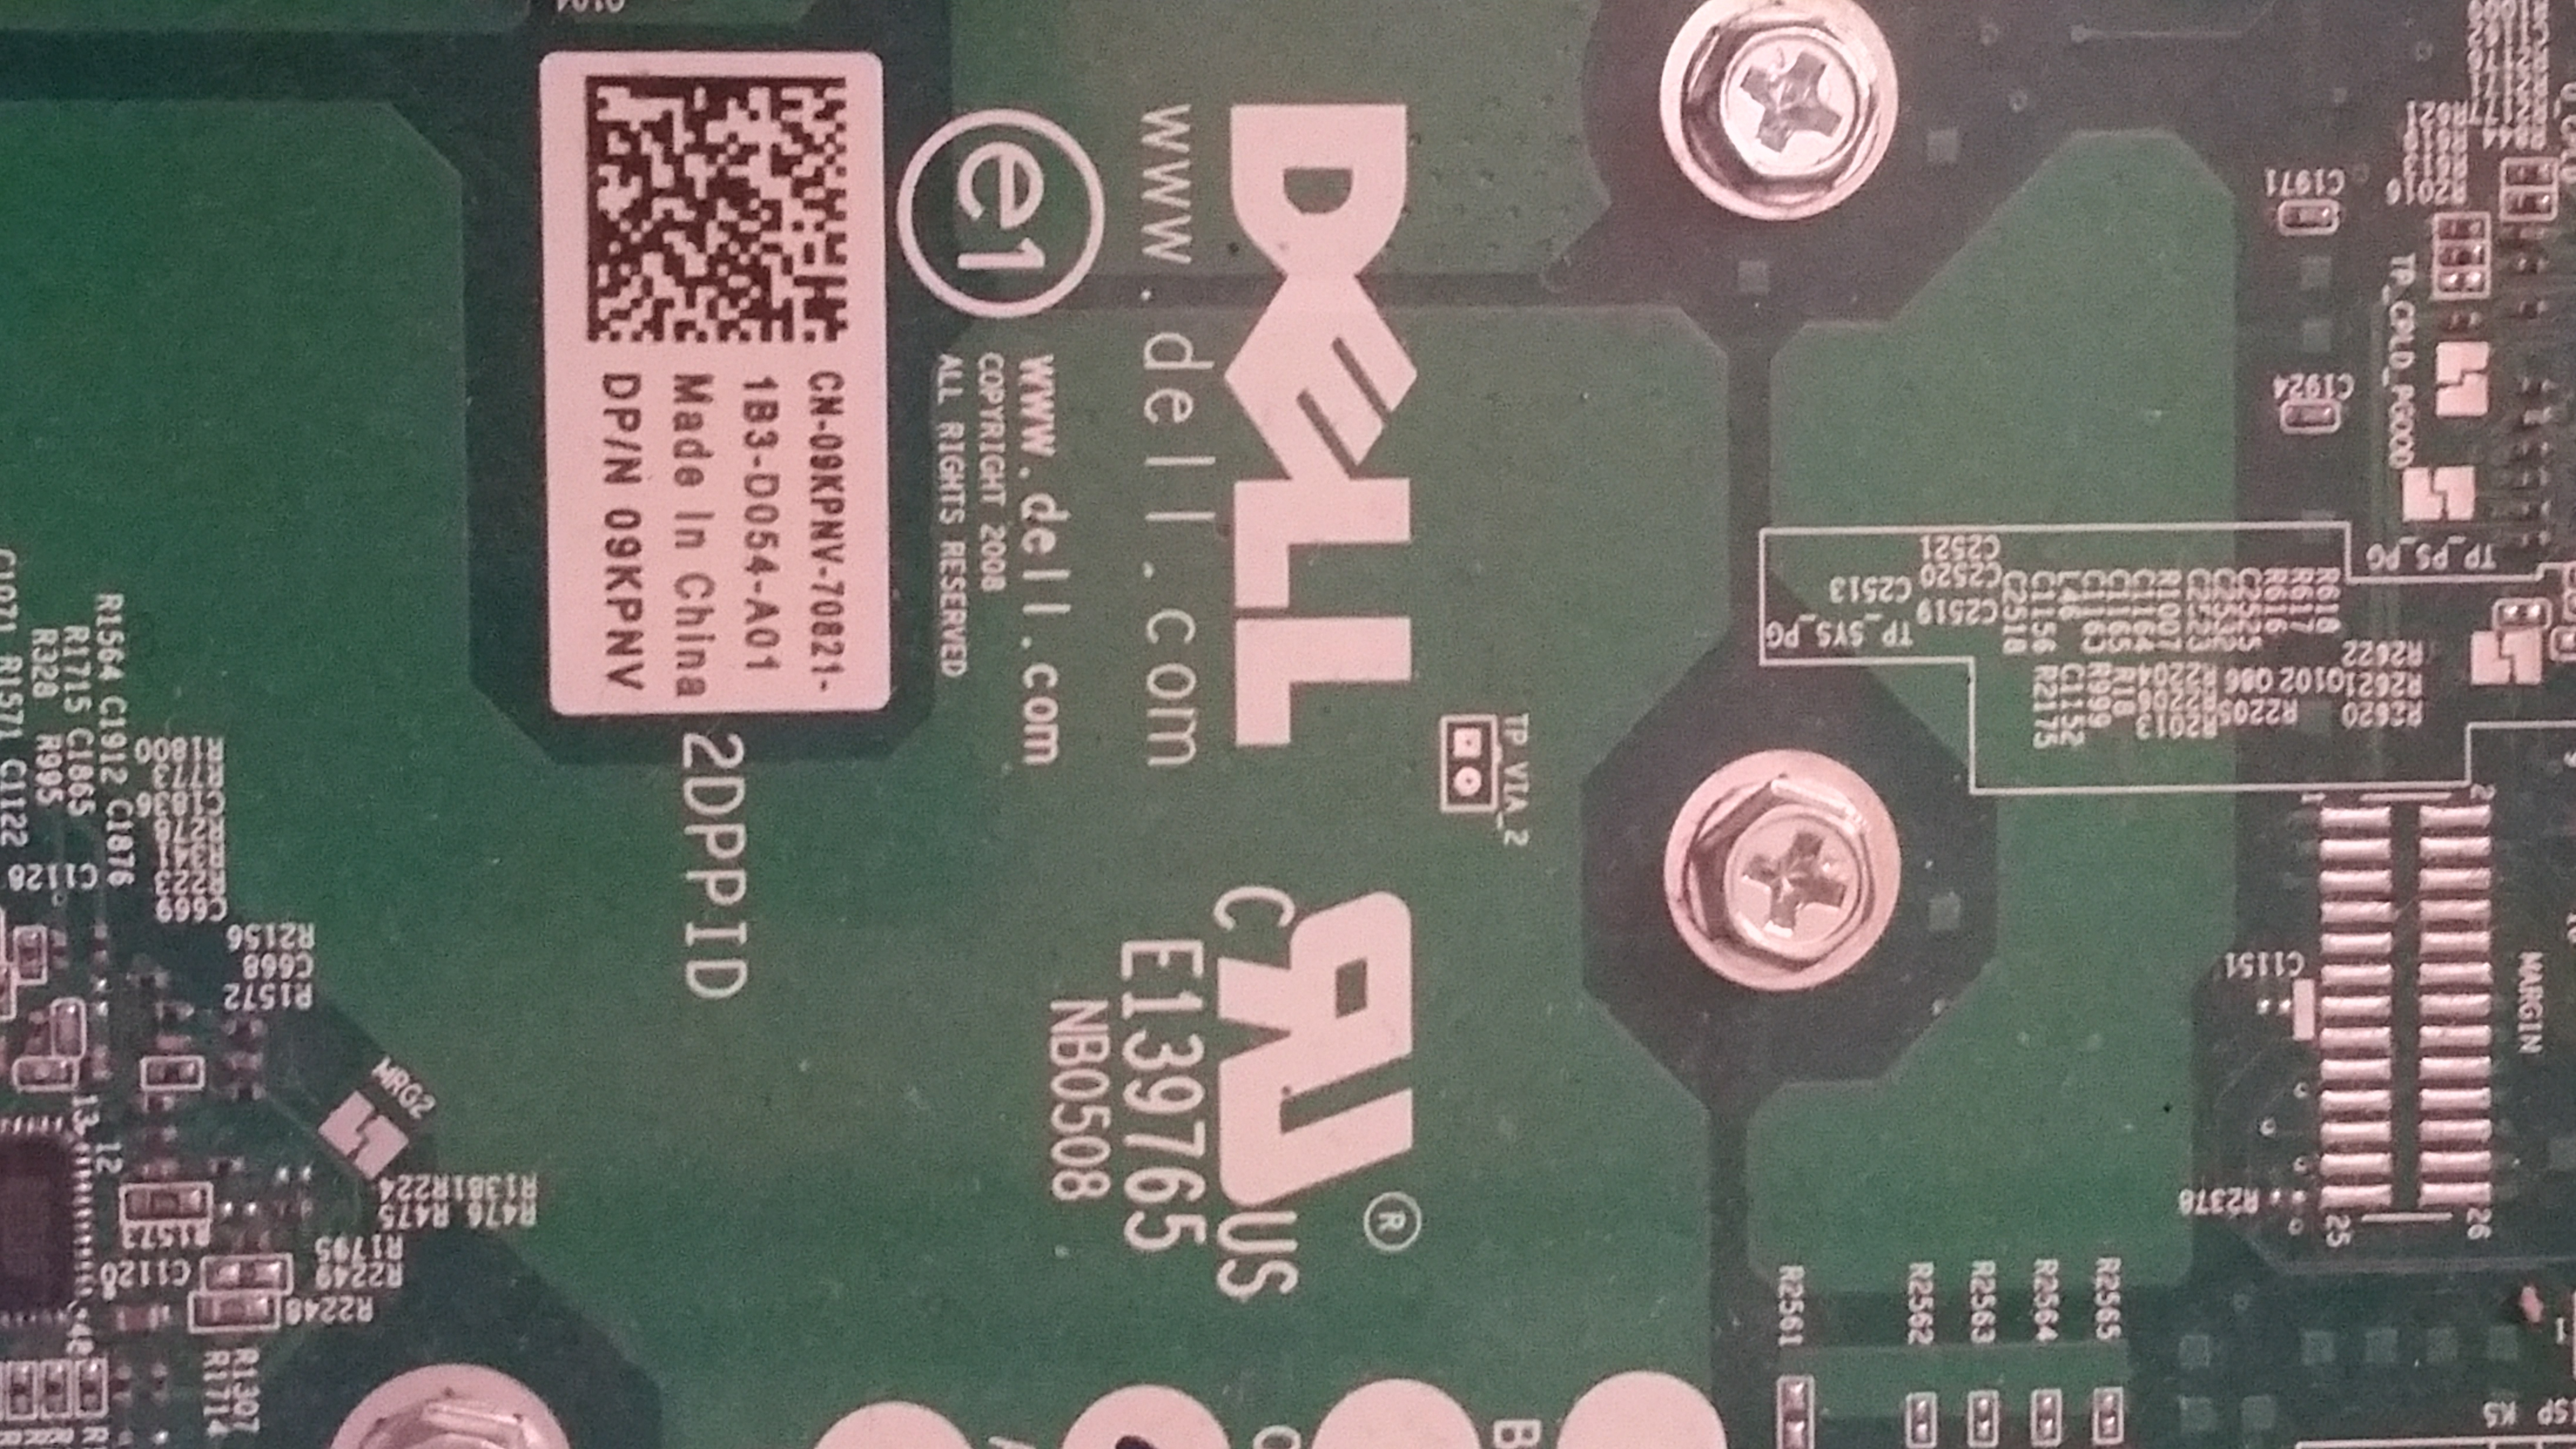 2x 4GB 8GB DDR3 1333 PC3 10600 Non ECC for Dell Precision Workstation T3500 